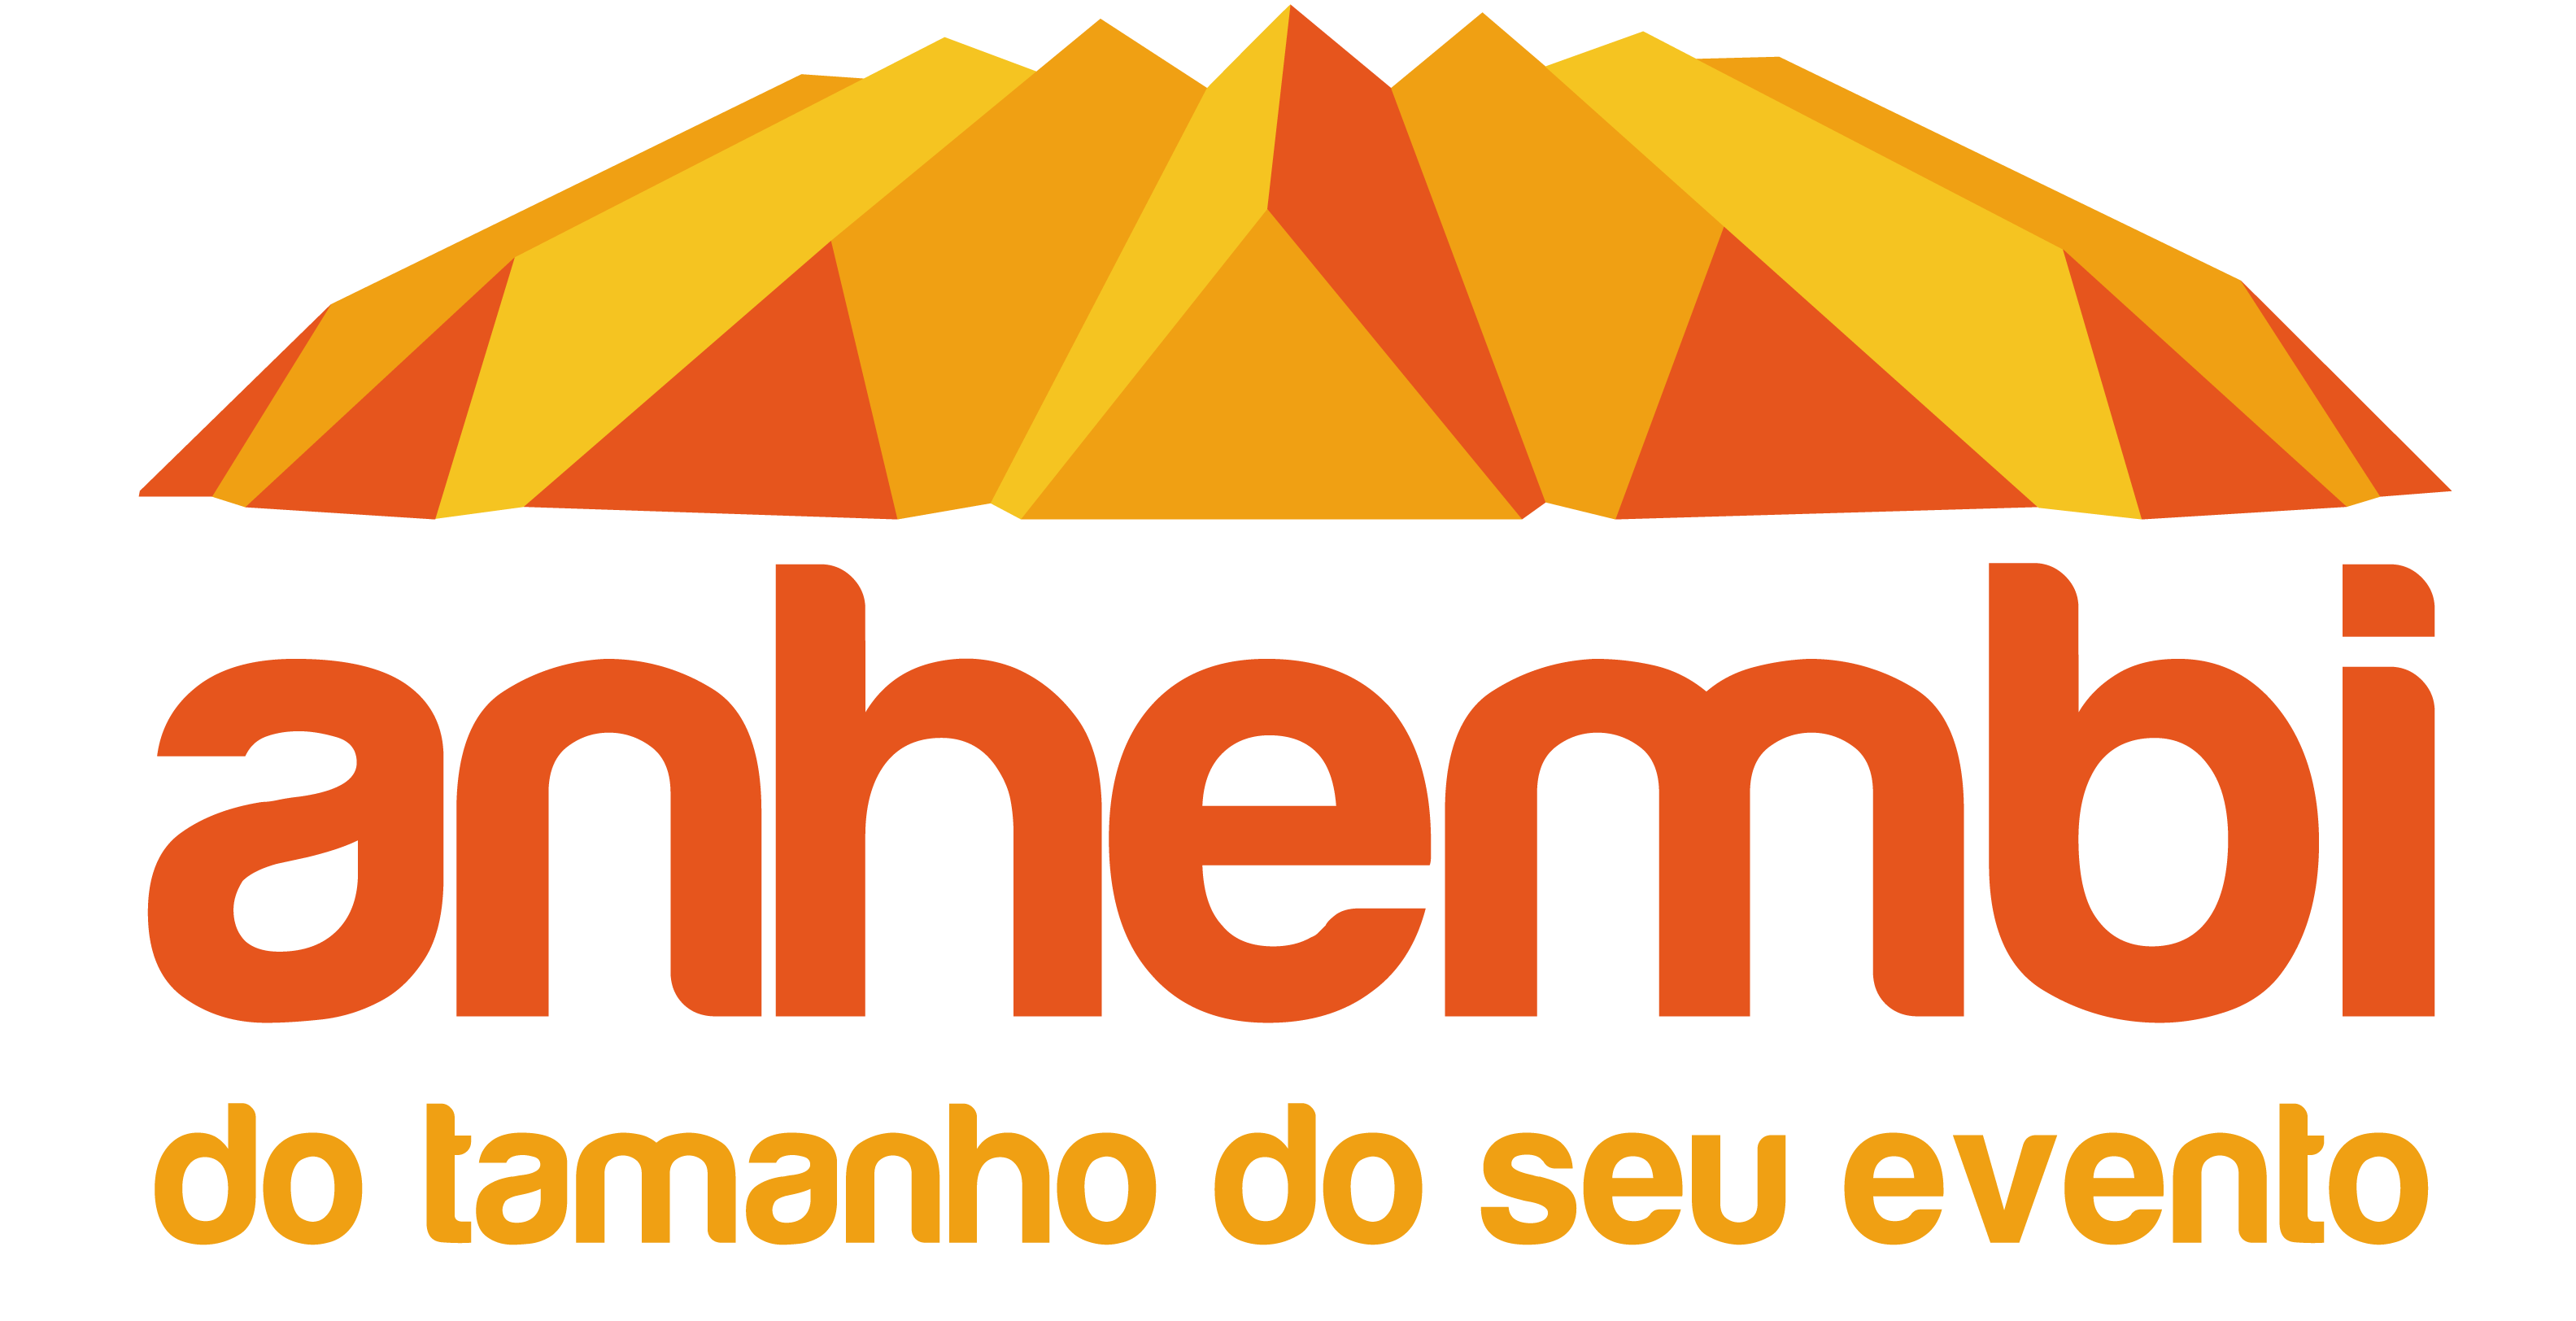 Anhembi Parque Logo photo - 1